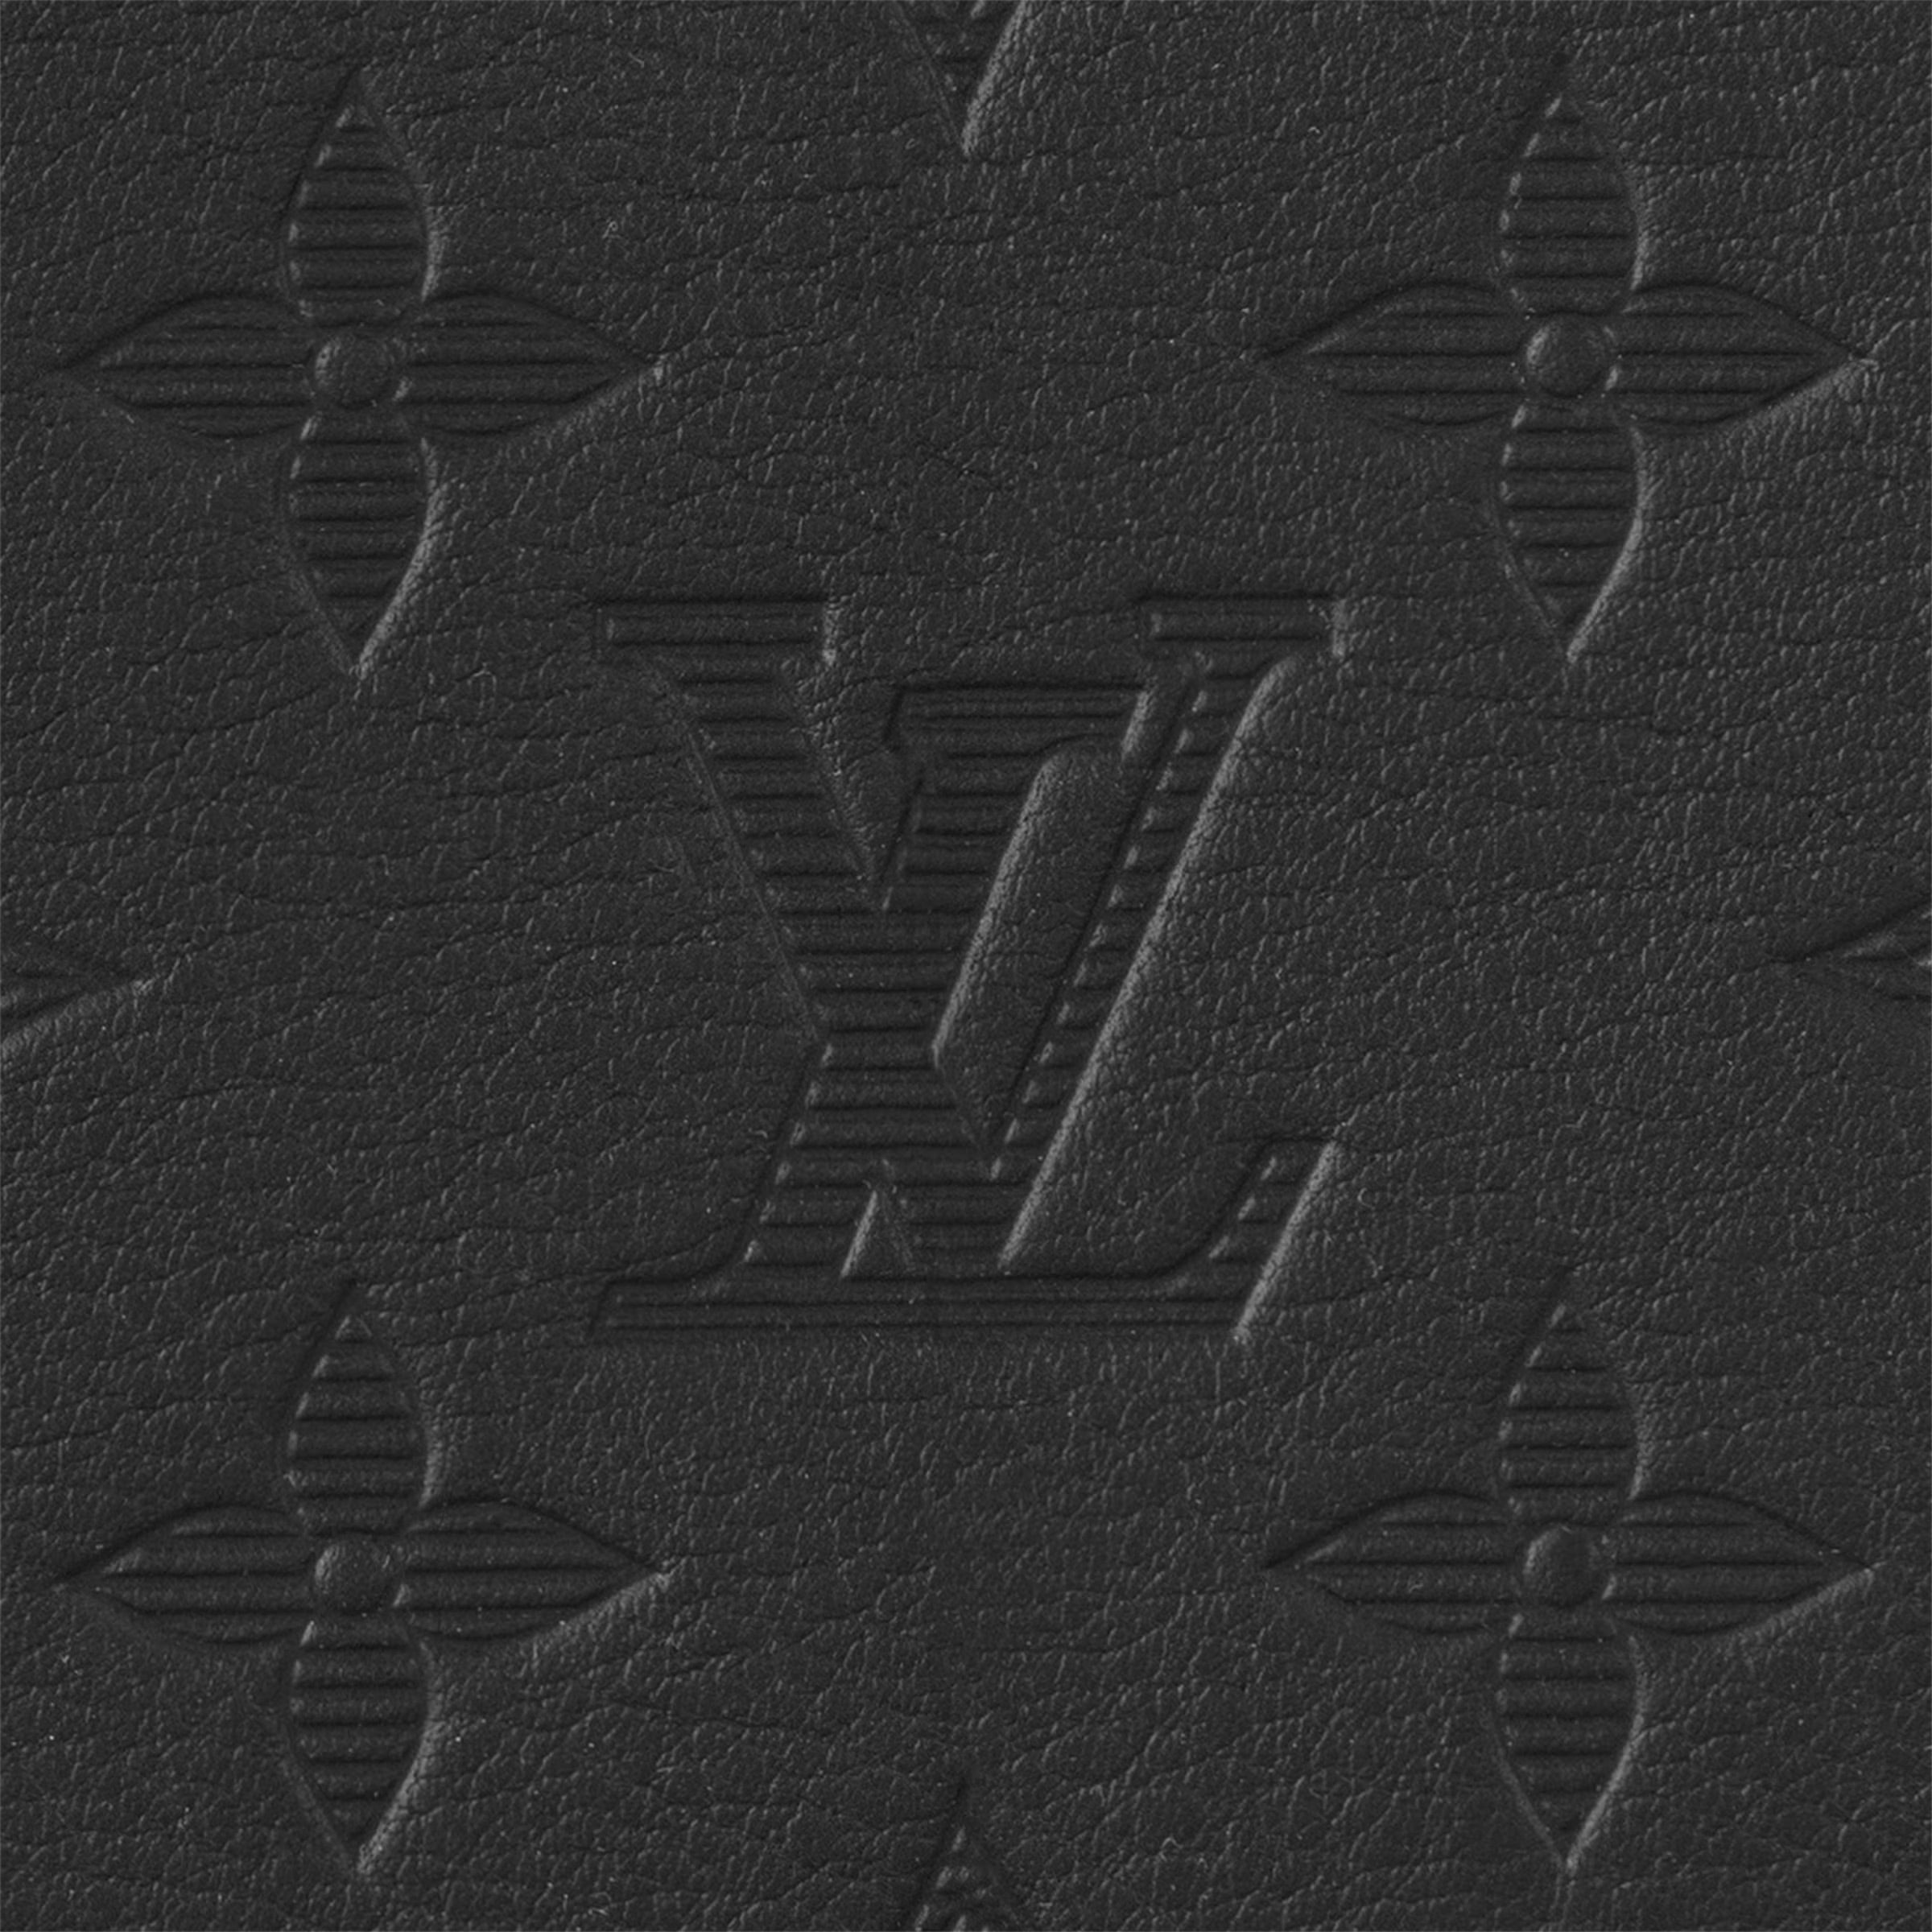 香港現貨 - Louis Vuitton Multiple 錢包 Monogram Shadow 皮革